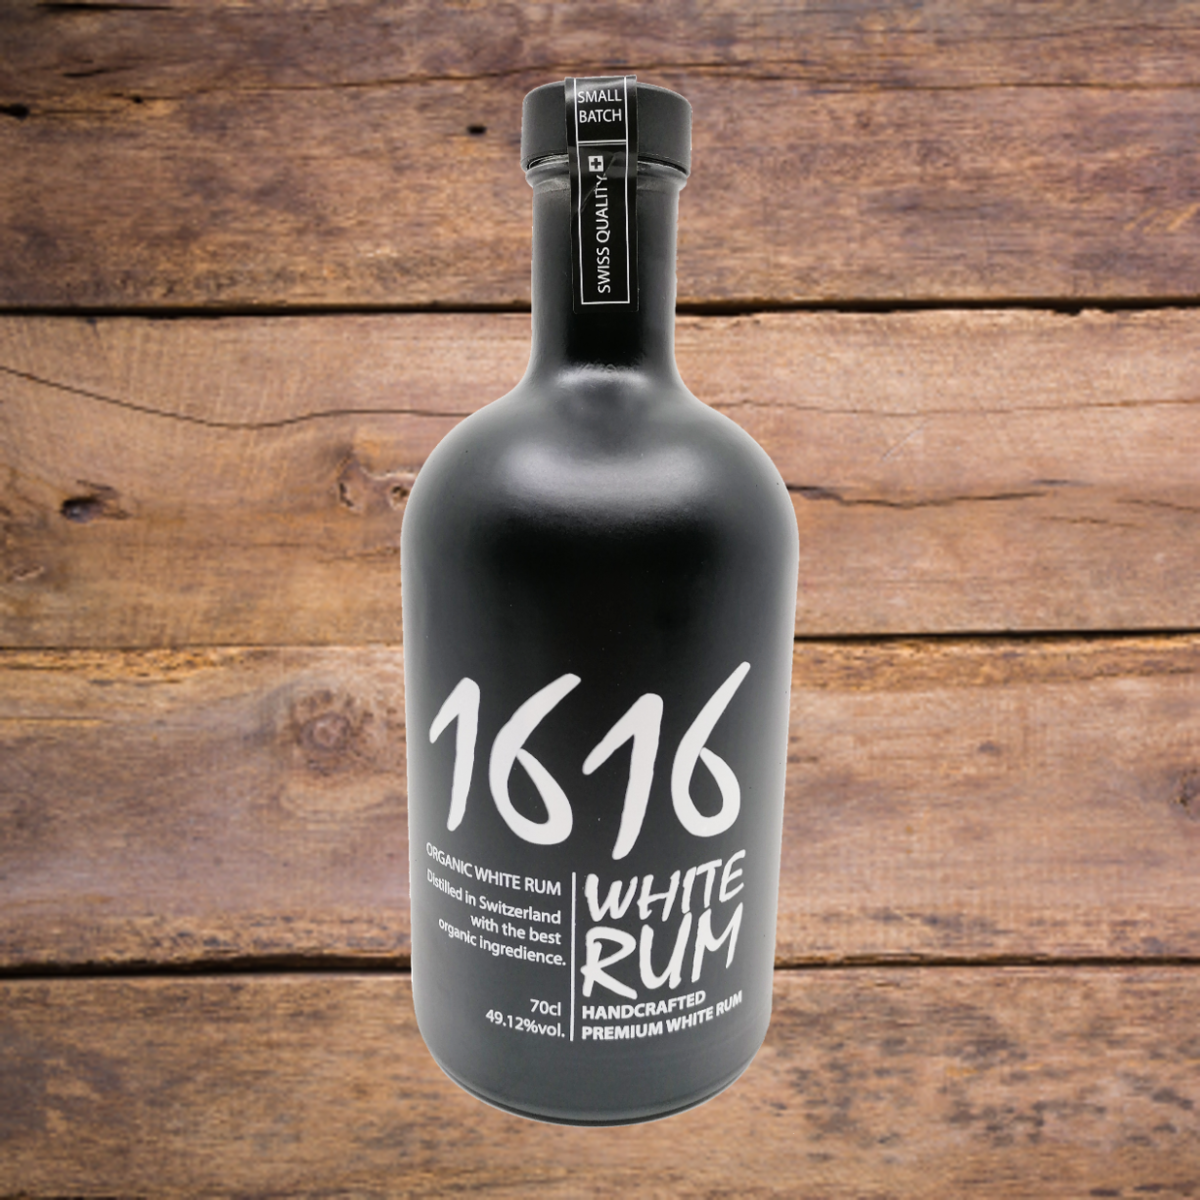 Langatun 1616 White Rum